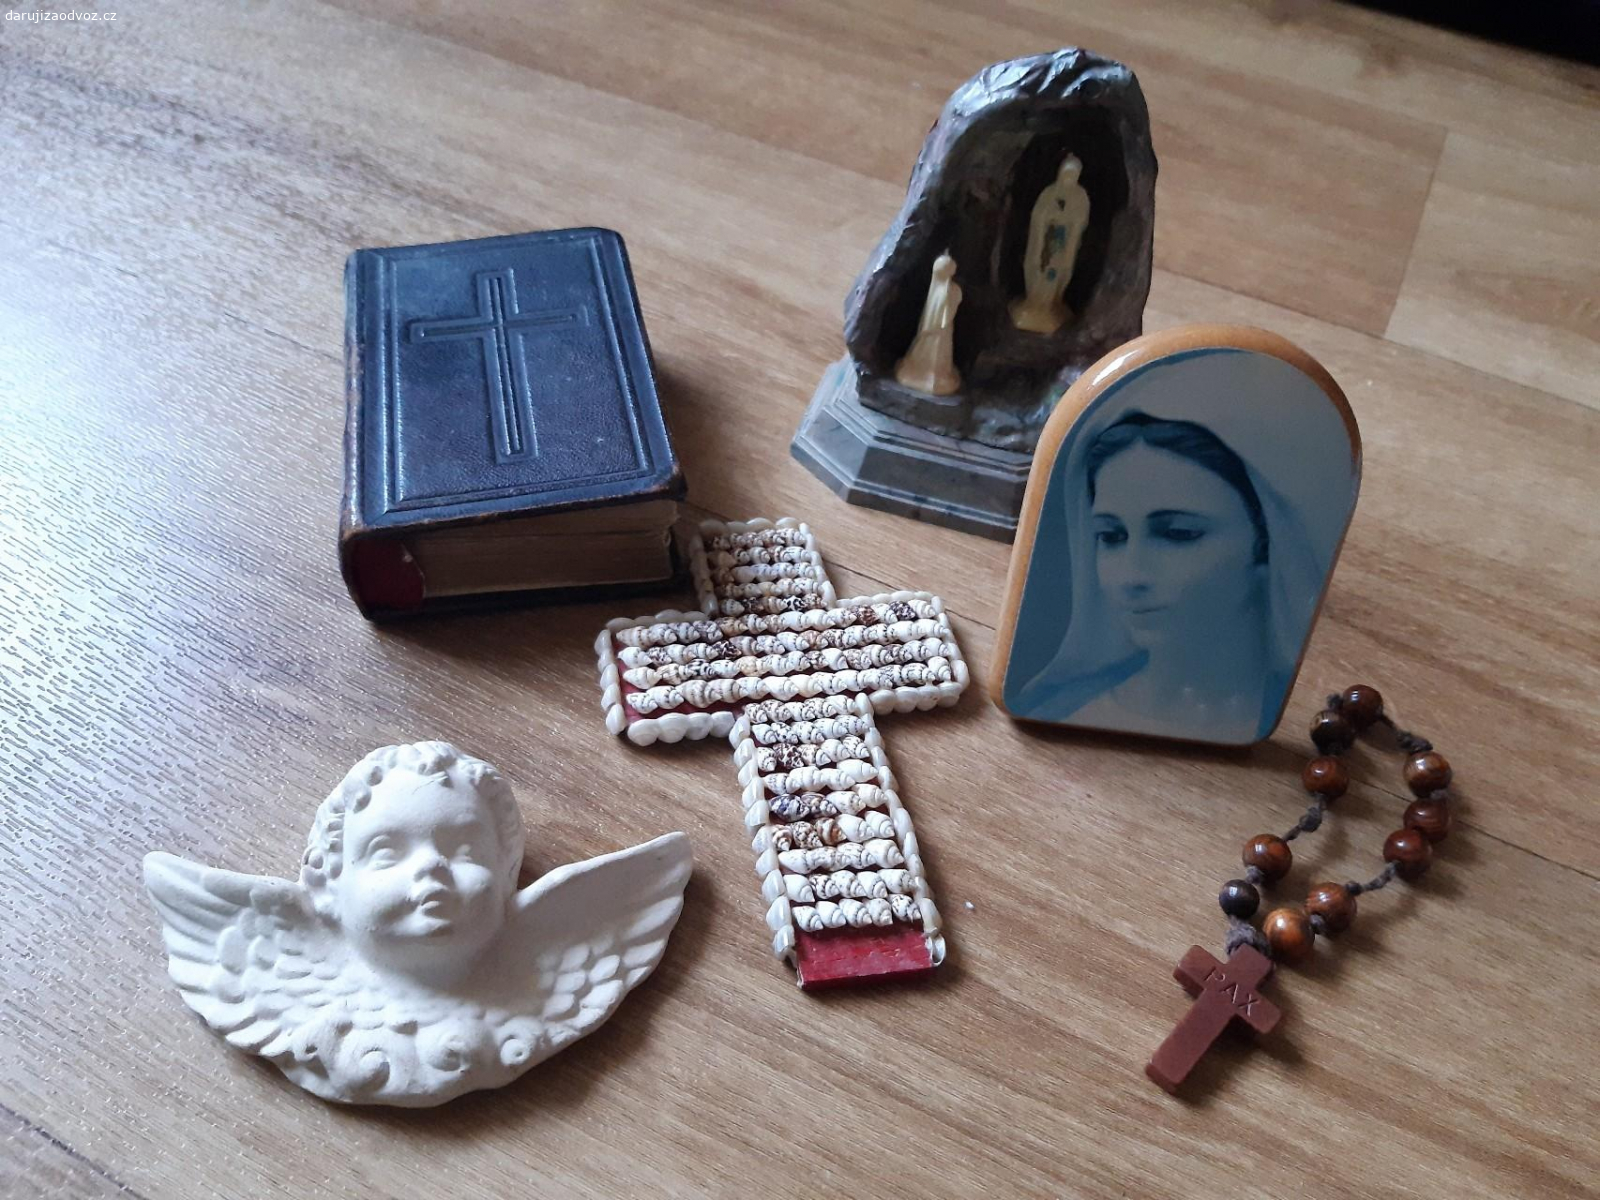 Staré náboženské předměty. obrázek,desatkovy růženec, sádrový andílek,  křížek z mušliček, plastová soška zjevení P.Marie, modlitební knížka Cesta do vlasti nebeské